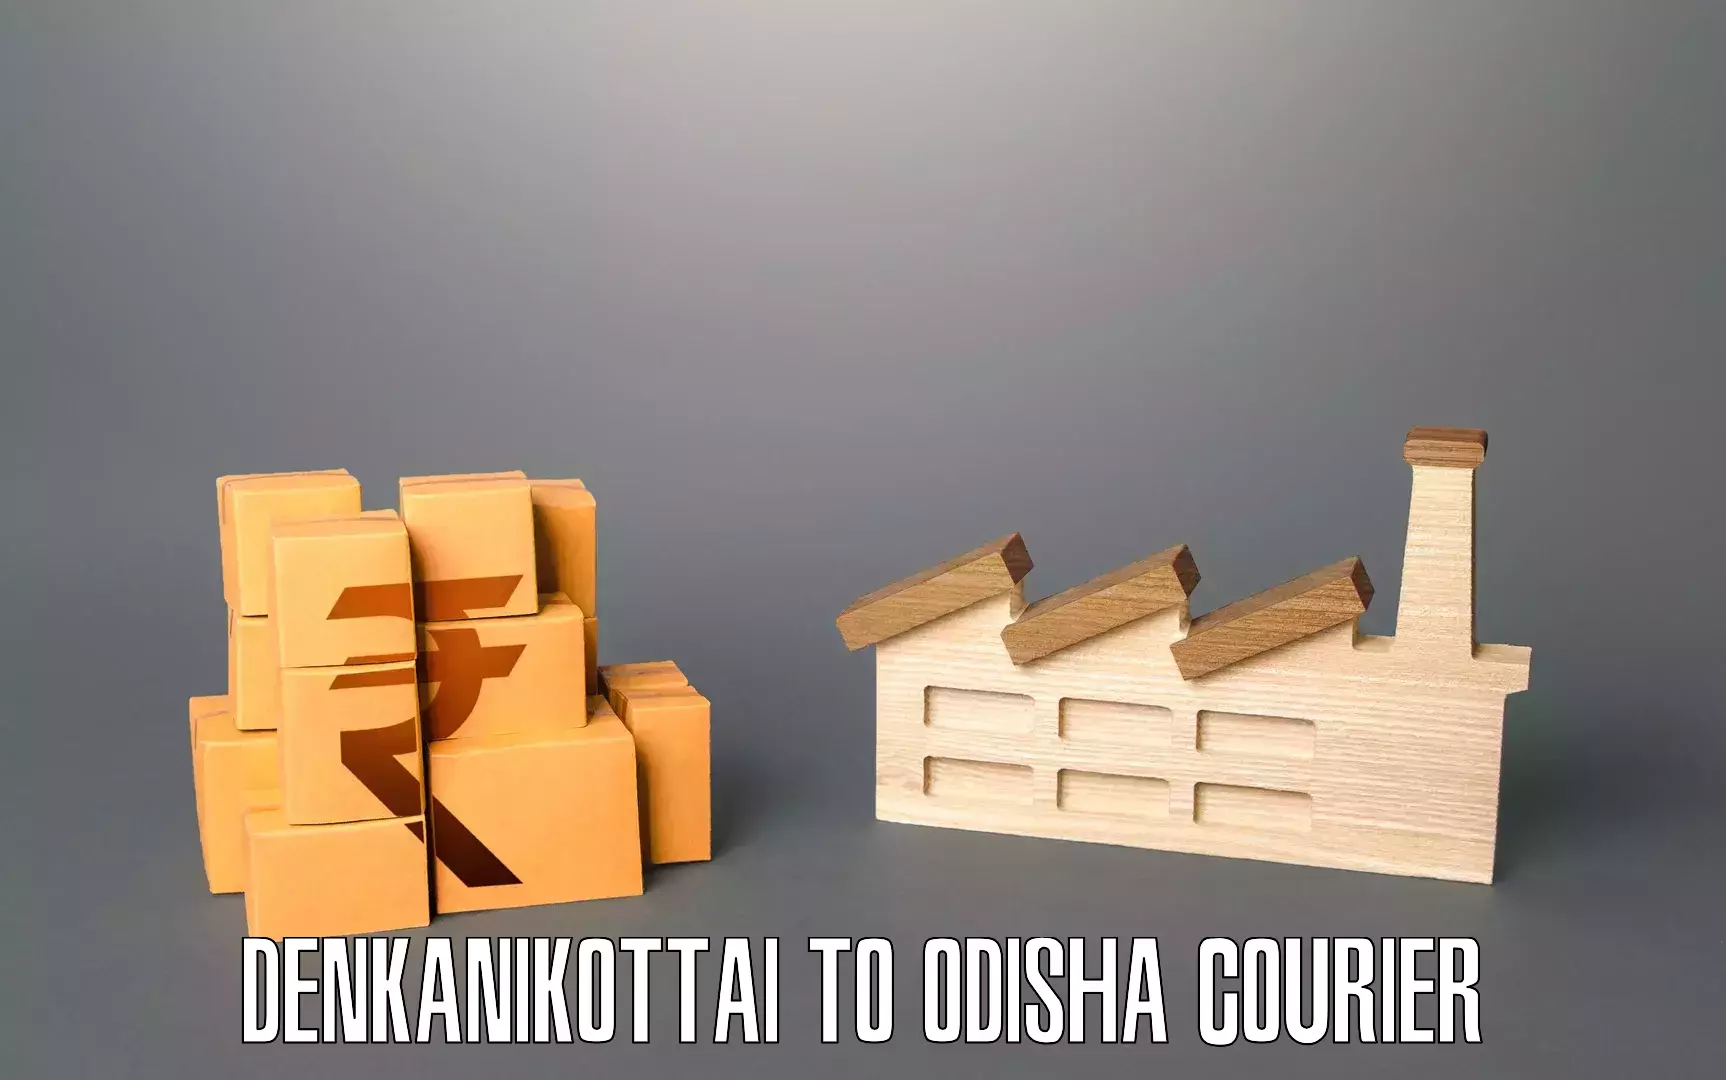 Reliable movers Denkanikottai to Odisha